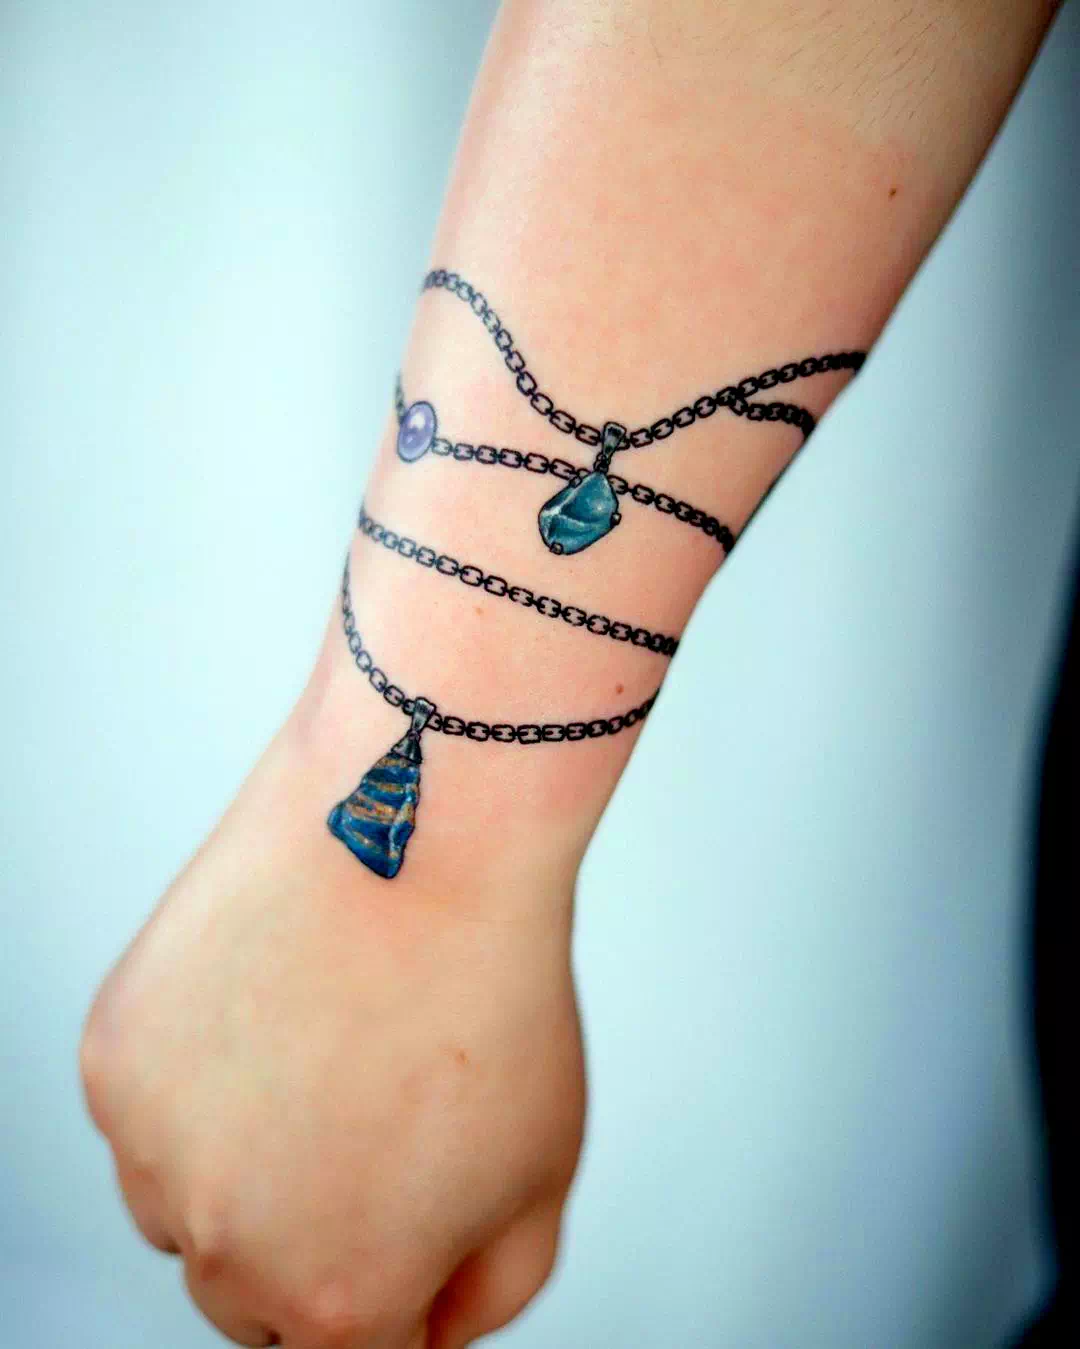 Recreación del tatuaje de la pulsera delicada